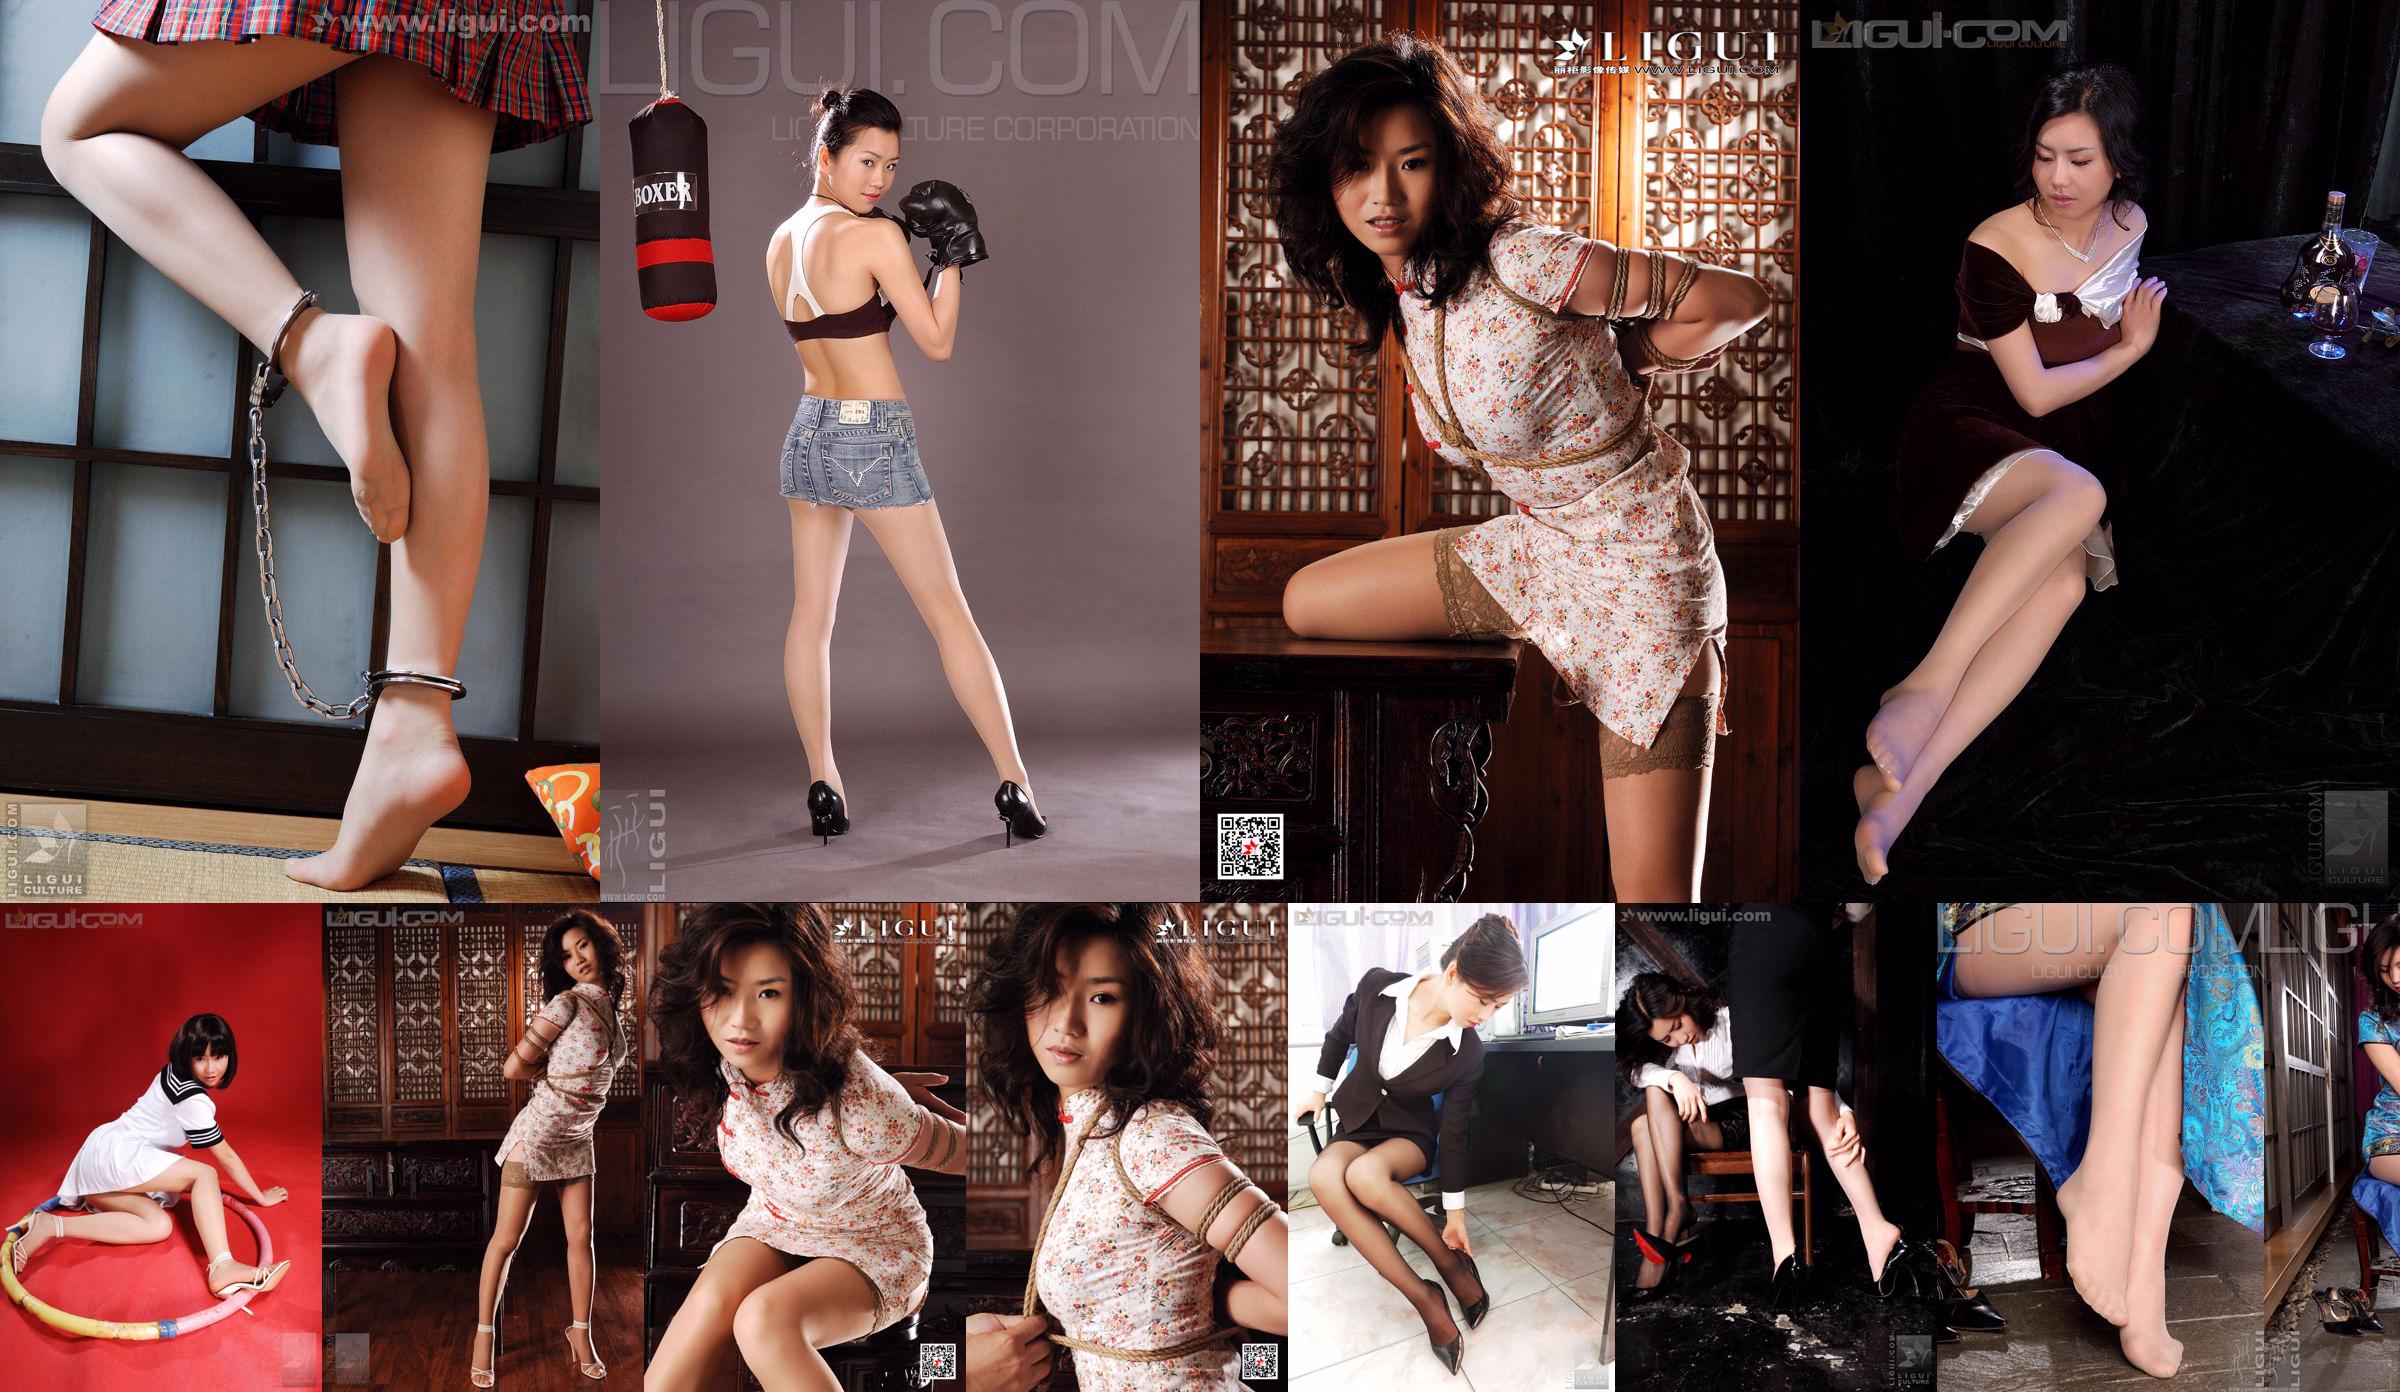 Modelo Yumi "Linda garota da escola mostra meias ao malhar" [Ligui LiGui] Foto de pé de seda com foto No.99db43 Página 4